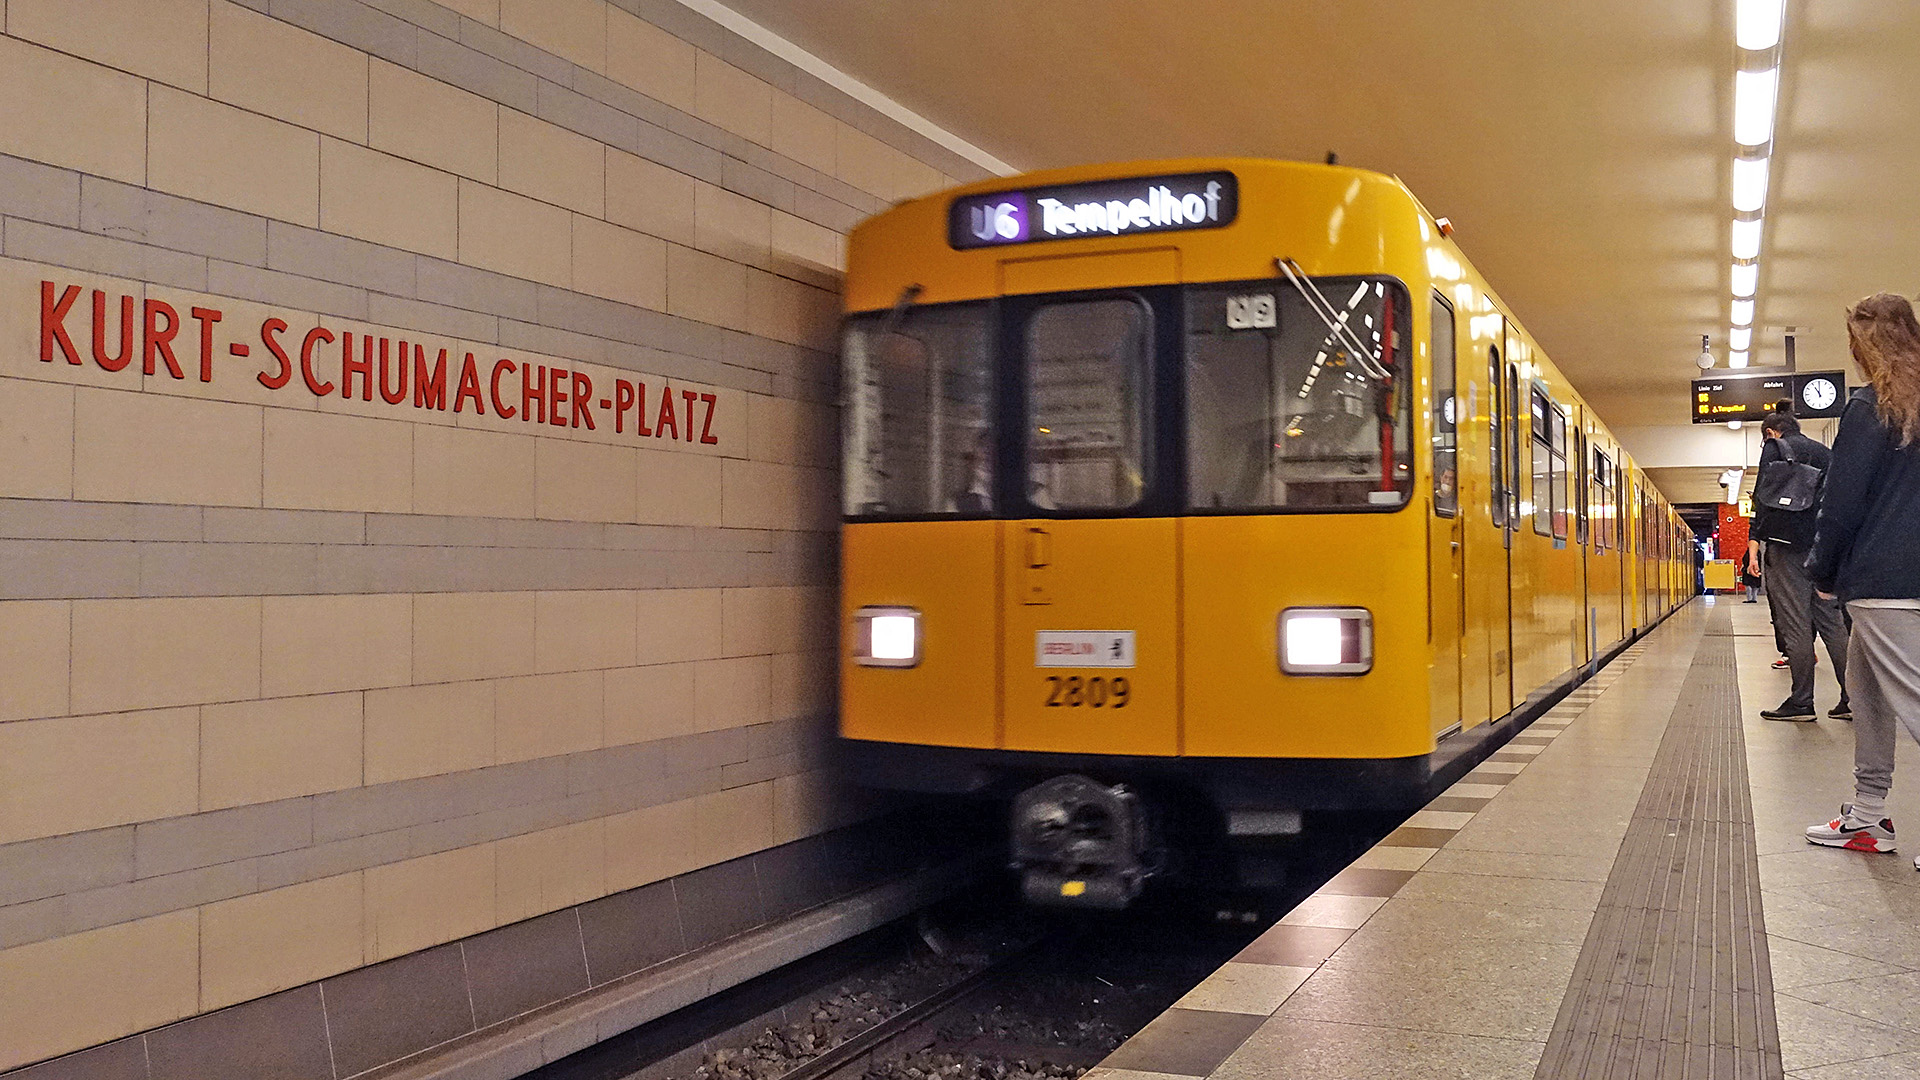 Archivbild: U-Bahn der Linie 6 faehrt in den Bahnhof Kurt-Schumacher-Platz ein am 04.06.2021.(Quelle: picture alliance/Sorge